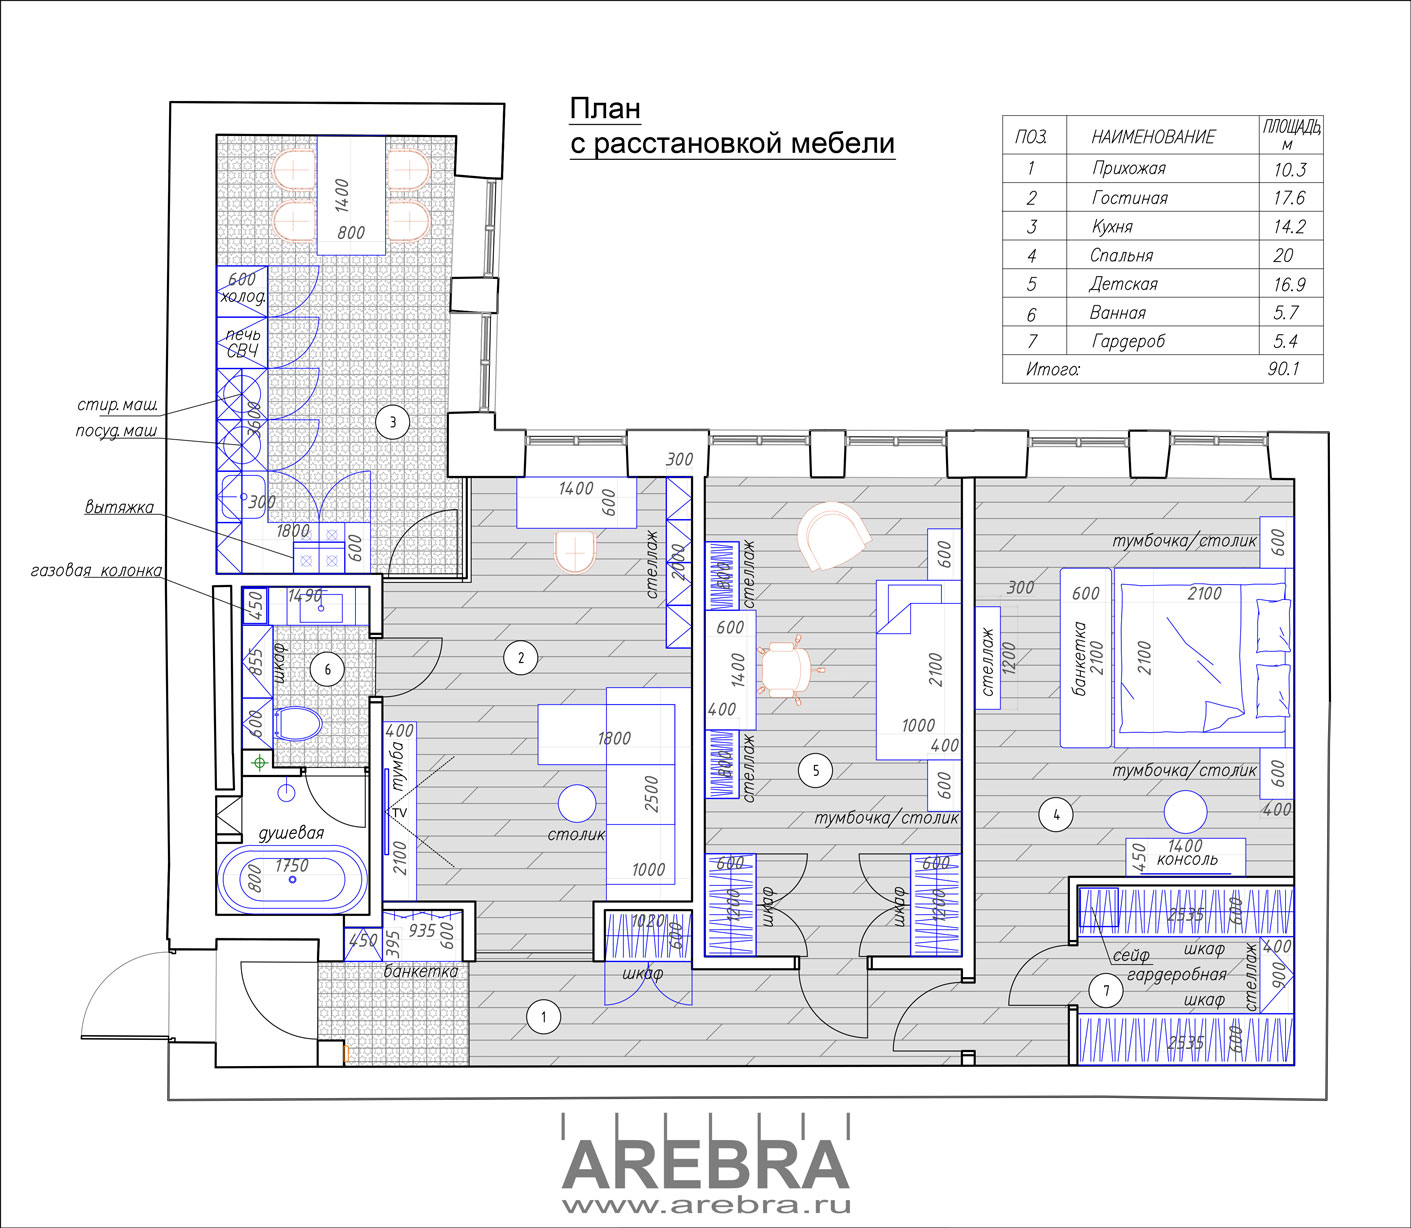 Дизайн проект интерьера квартиры общей площадью 90,1 м2, по адресу г. Санкт-Петербург, ул. Достоевского